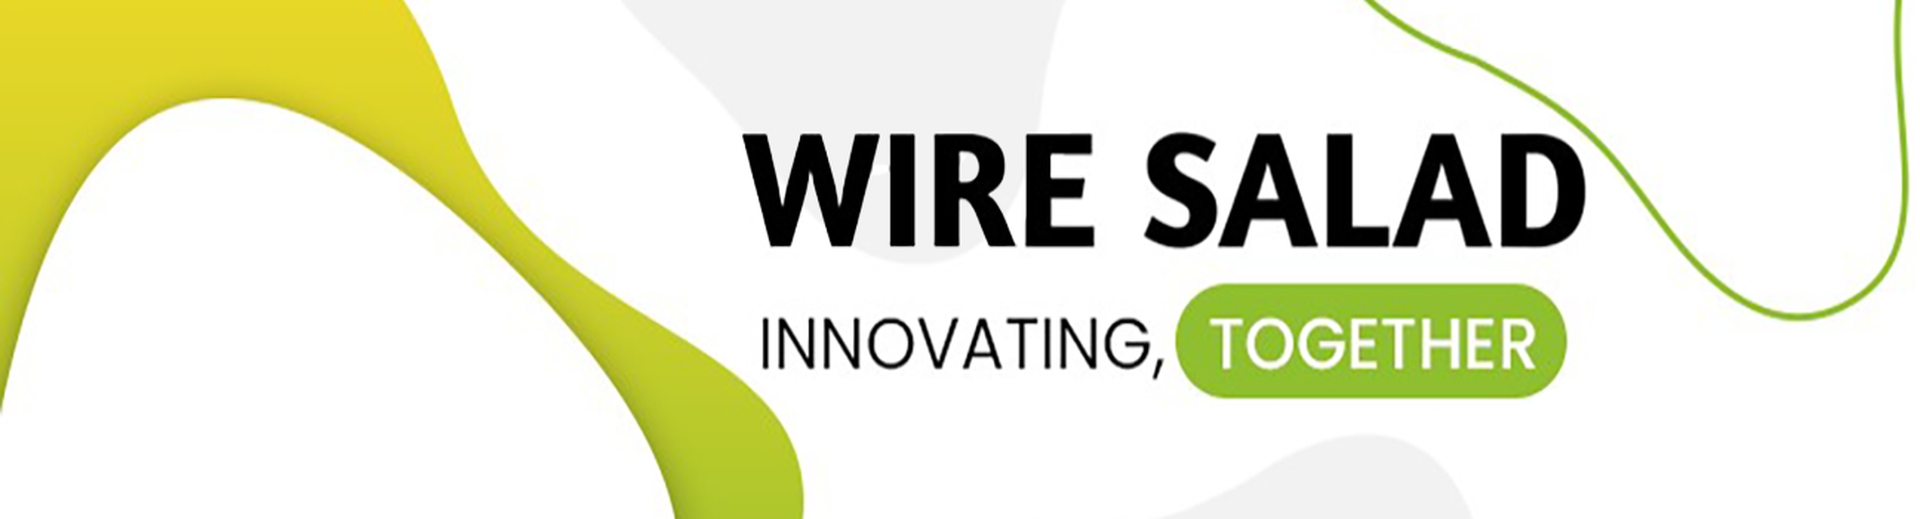 Wire Salad OÜ (edaspidi: ettevõtja) on asutatud 23. novembril 2020. Ettevõtja peamine tegevusala on innovatiivsete digitaalsete toodete nagu näojooga, sofaj...